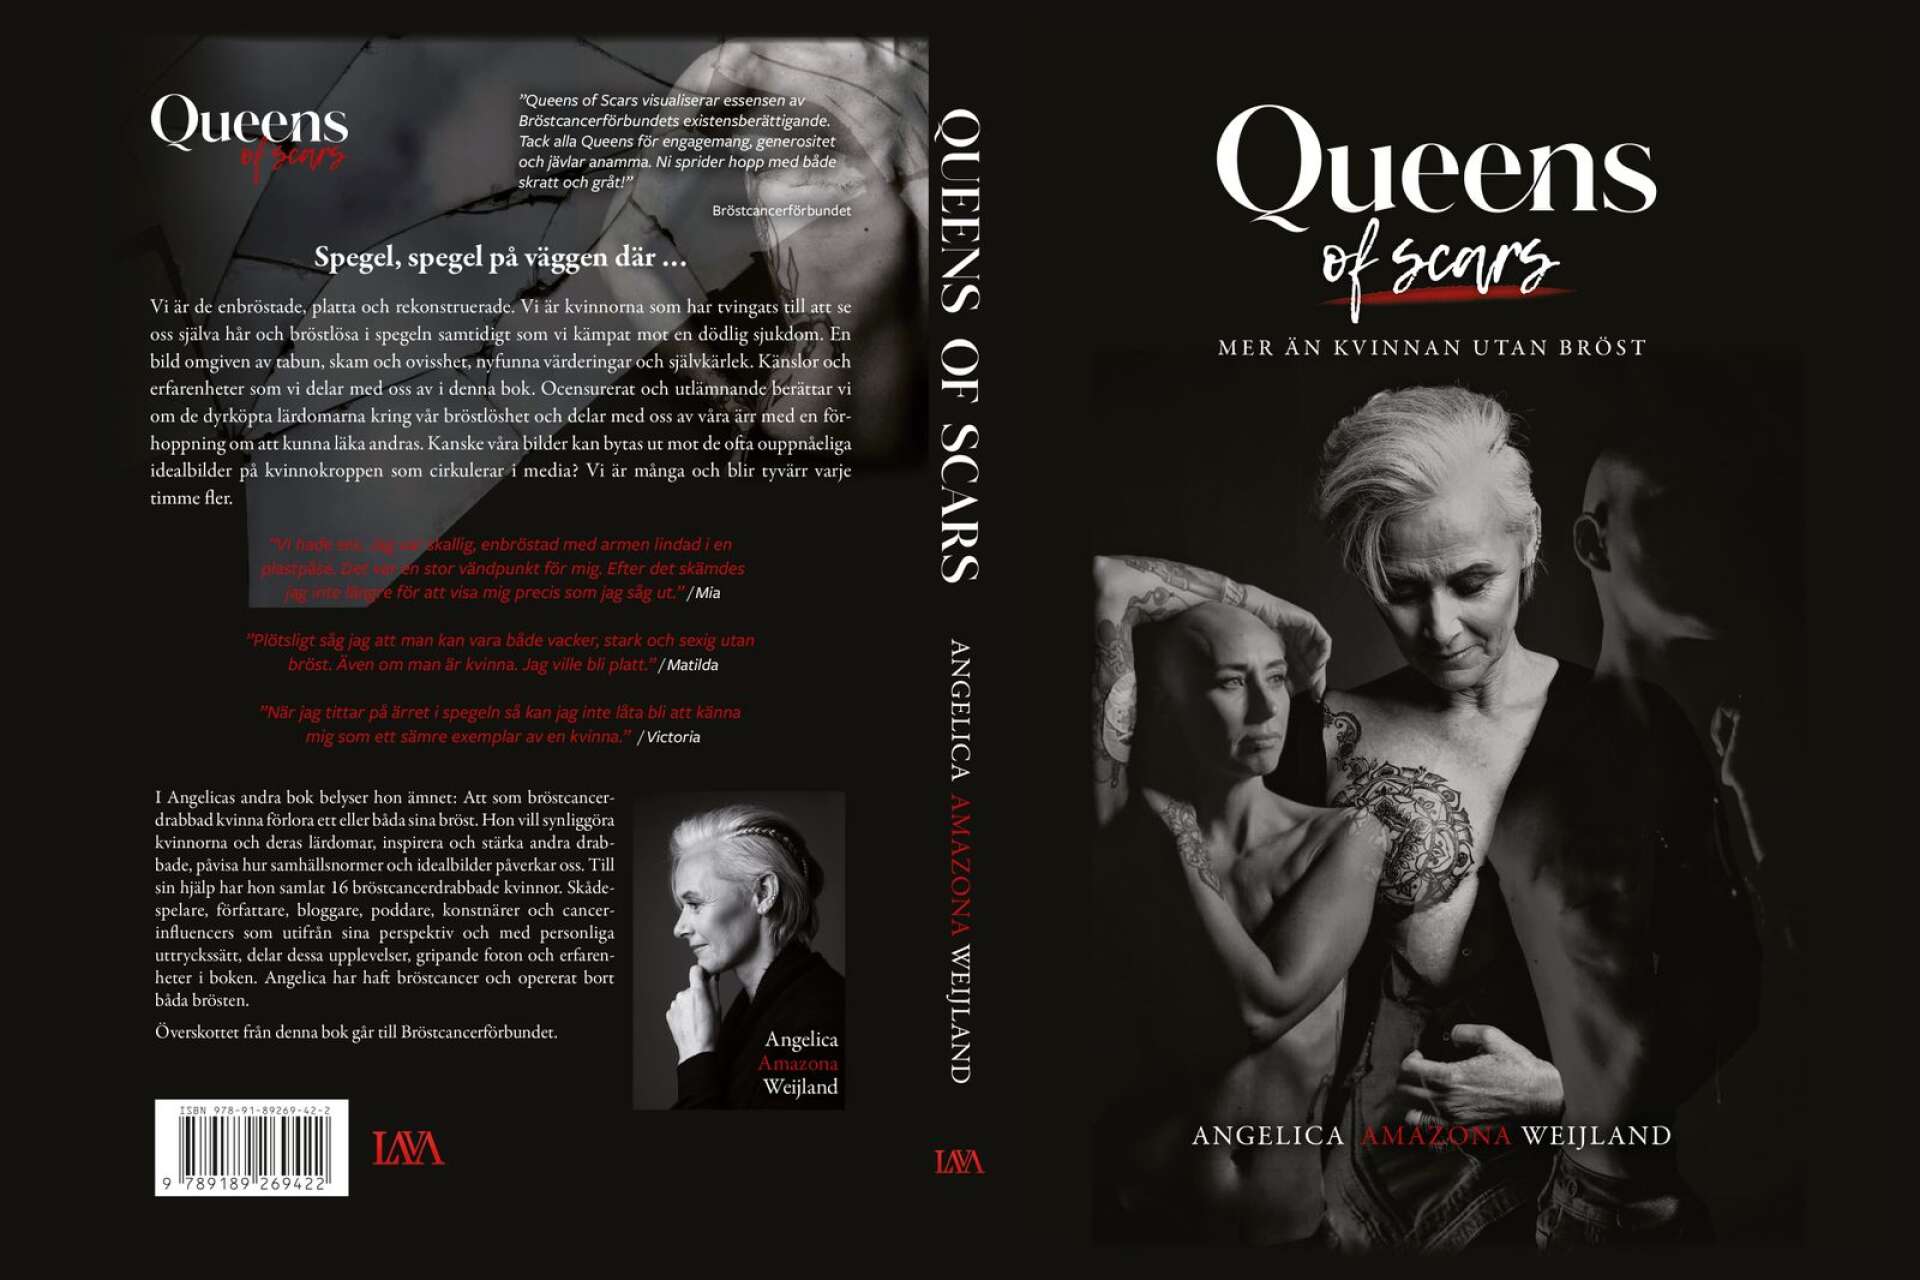 Johans fotografier är med i boken Queens of scars, där man får följa olika kvinnor som drabbas av bröstcancer. 